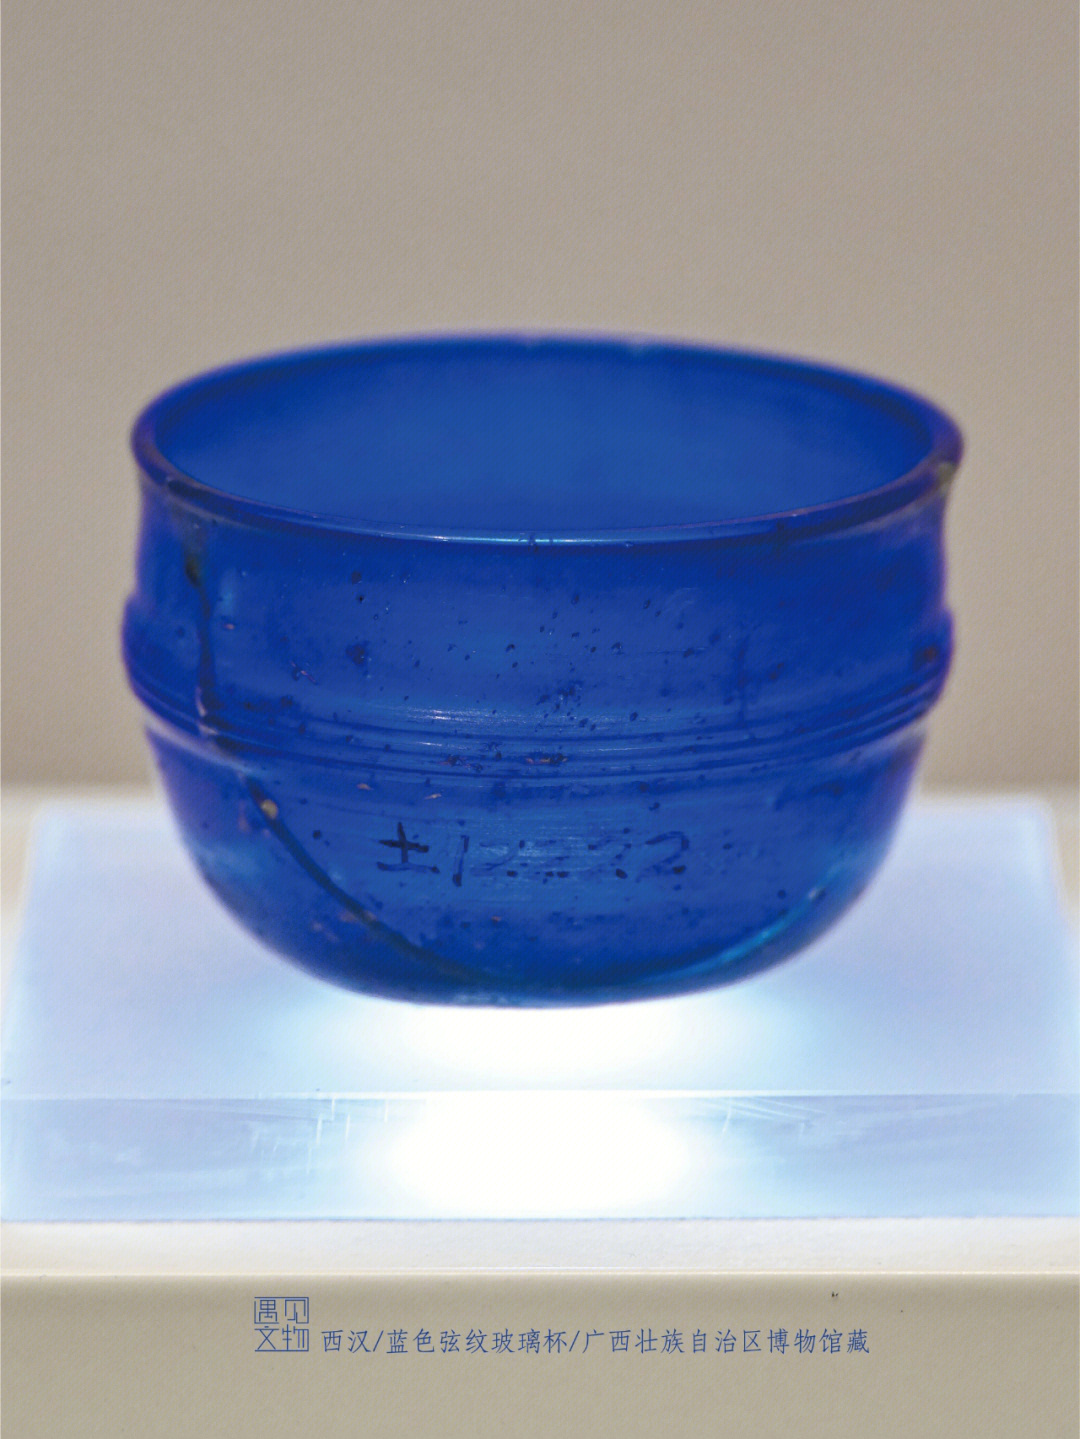 西汉·蓝色弦纹玻璃杯口径61厘米,底径3